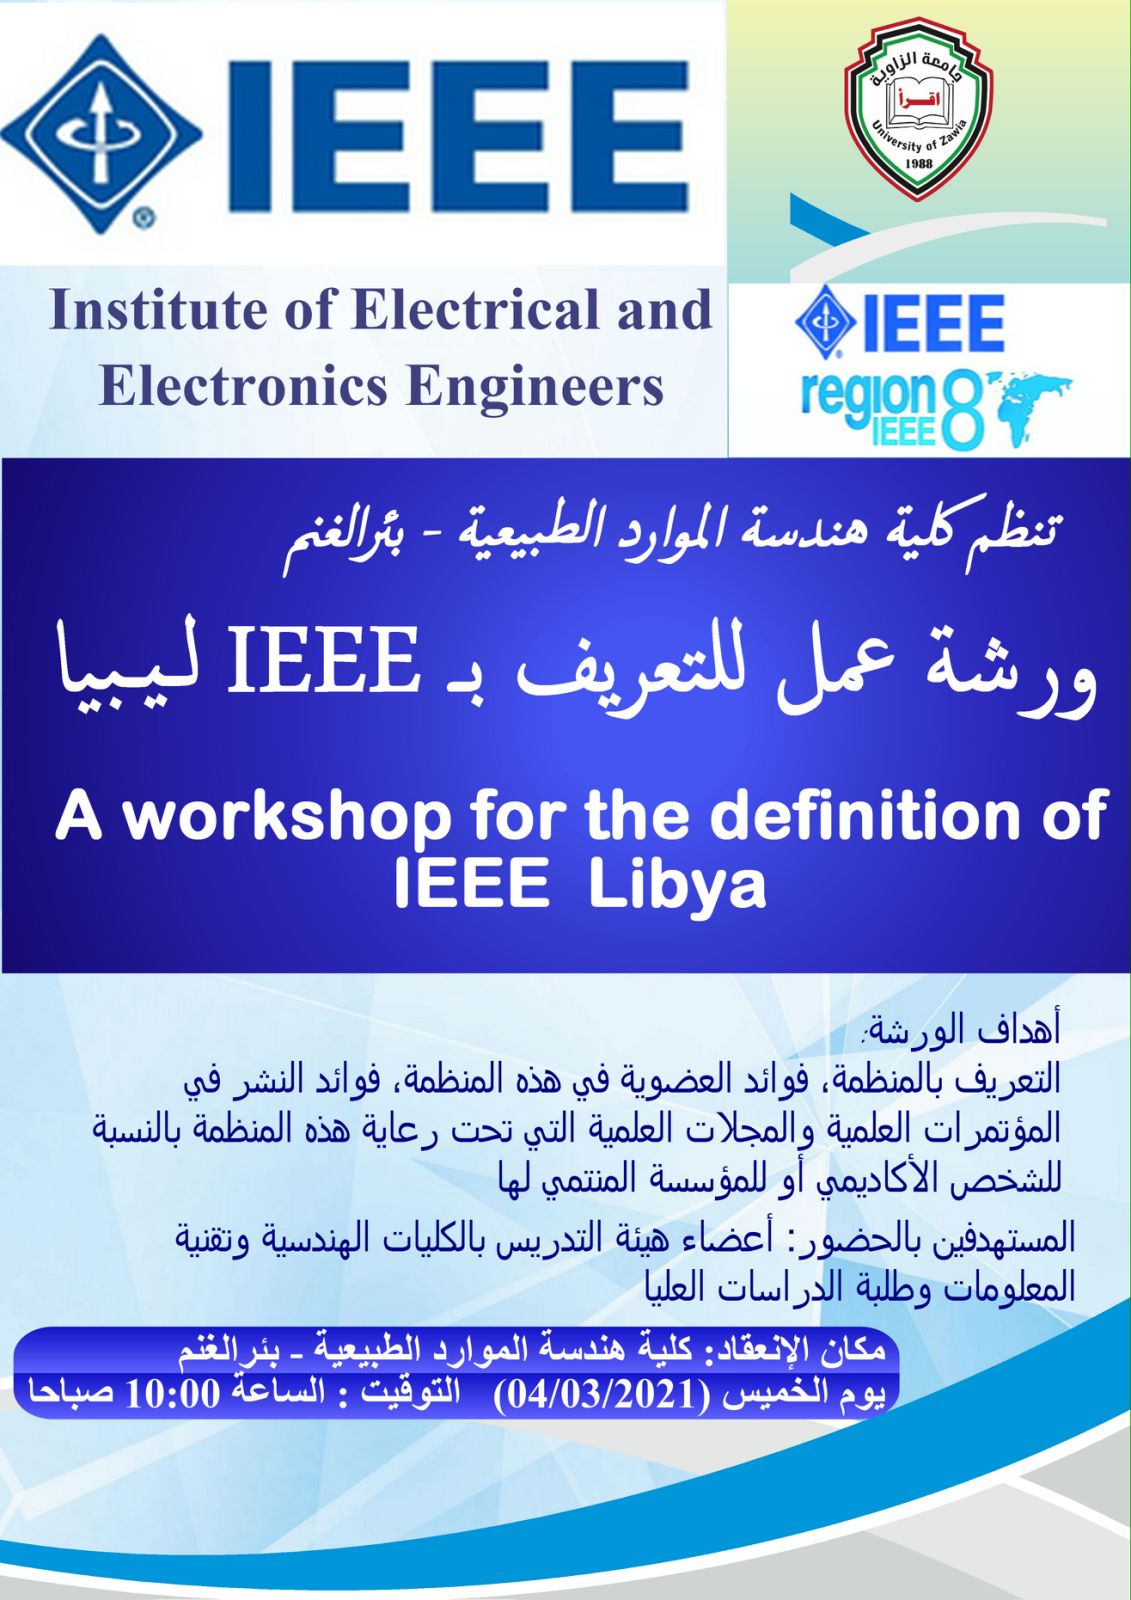 إقامة ورشة عمل بالكلية للتعريف بمنظمة IEEE فرع ليبيا